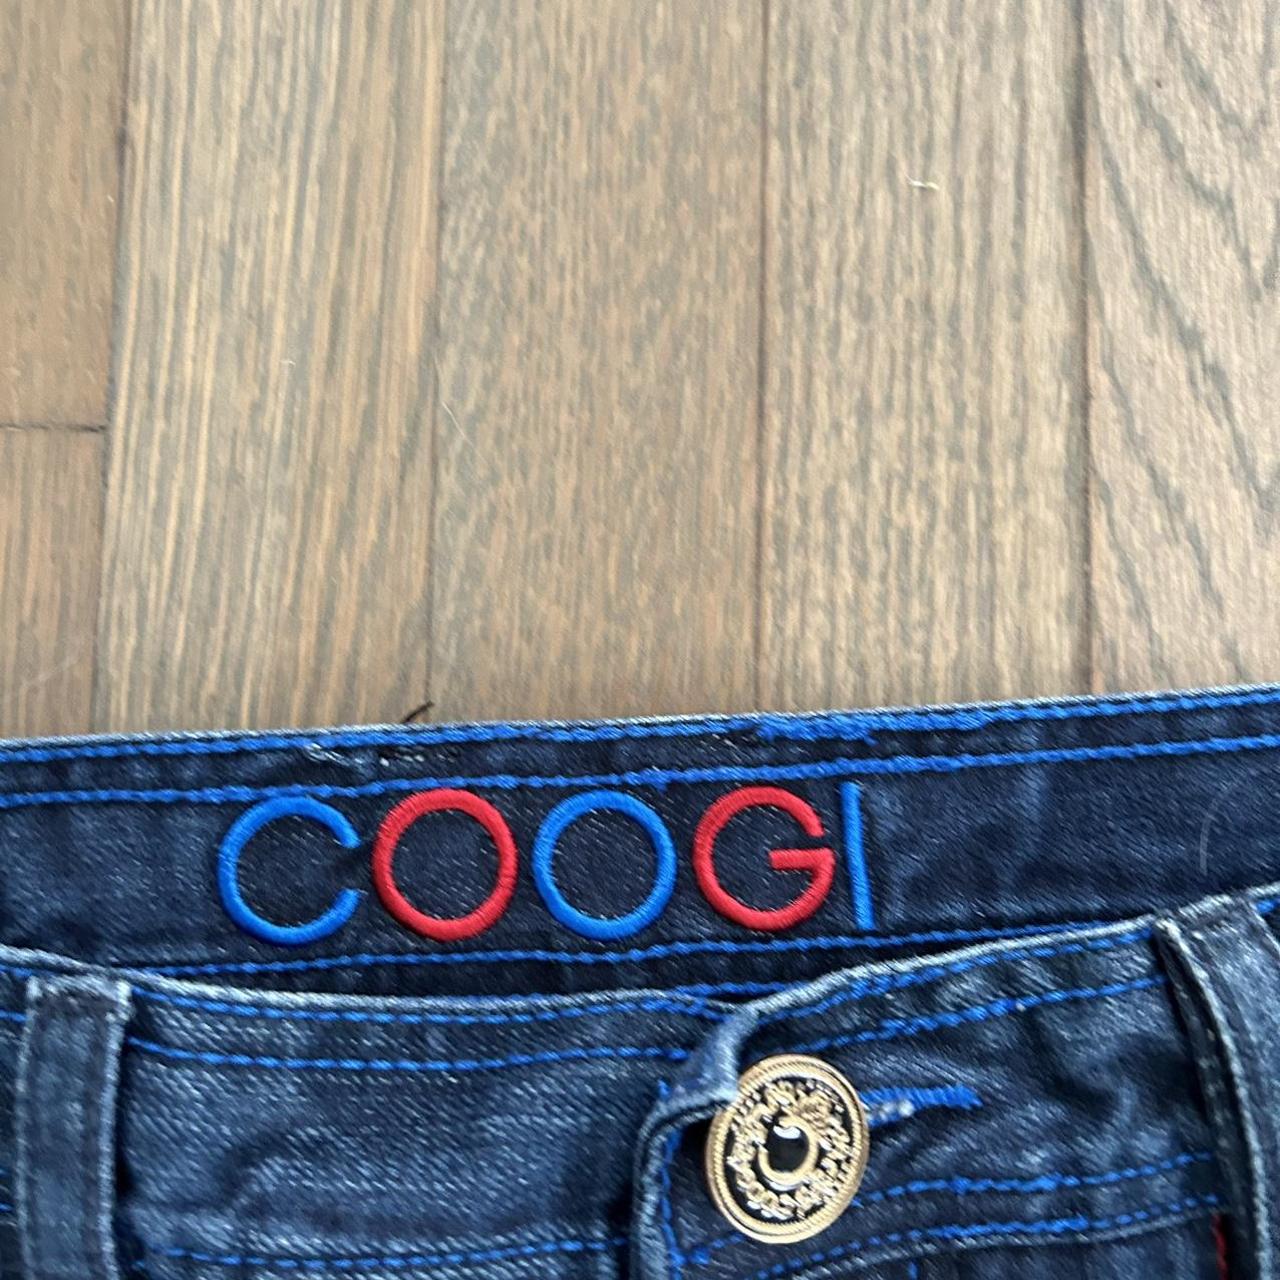 Coogi Men's Blue and Gold Jeans | Depop